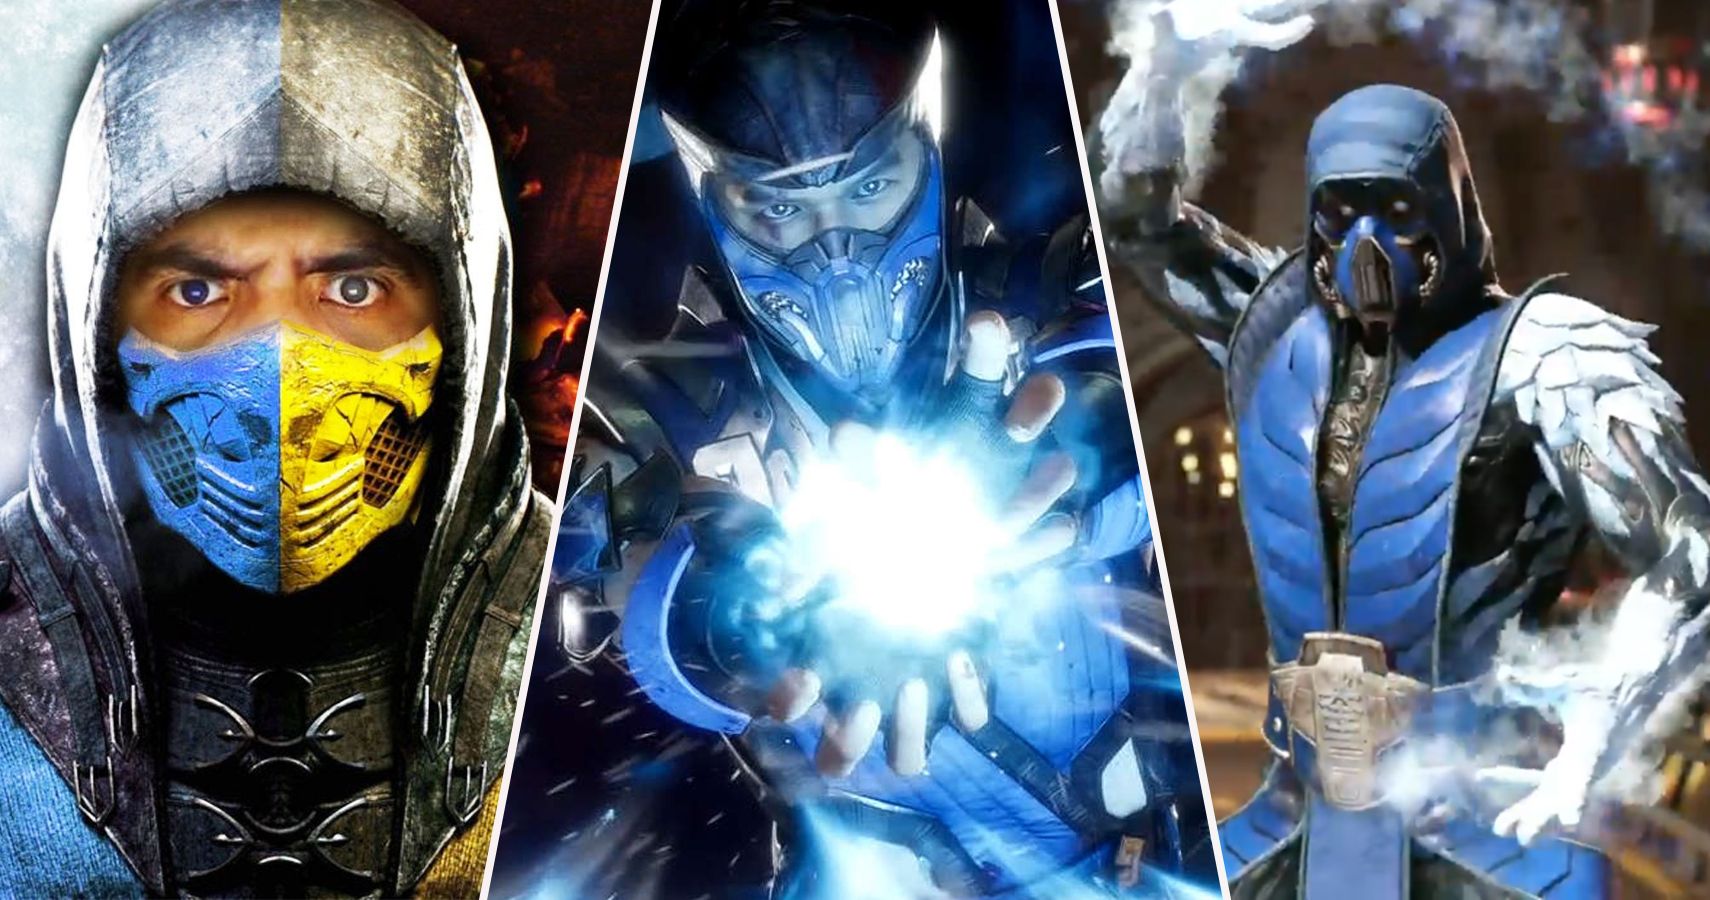 Que fatos curiosos envolvem o Sub-Zero de Mortal Kombat? - Quora